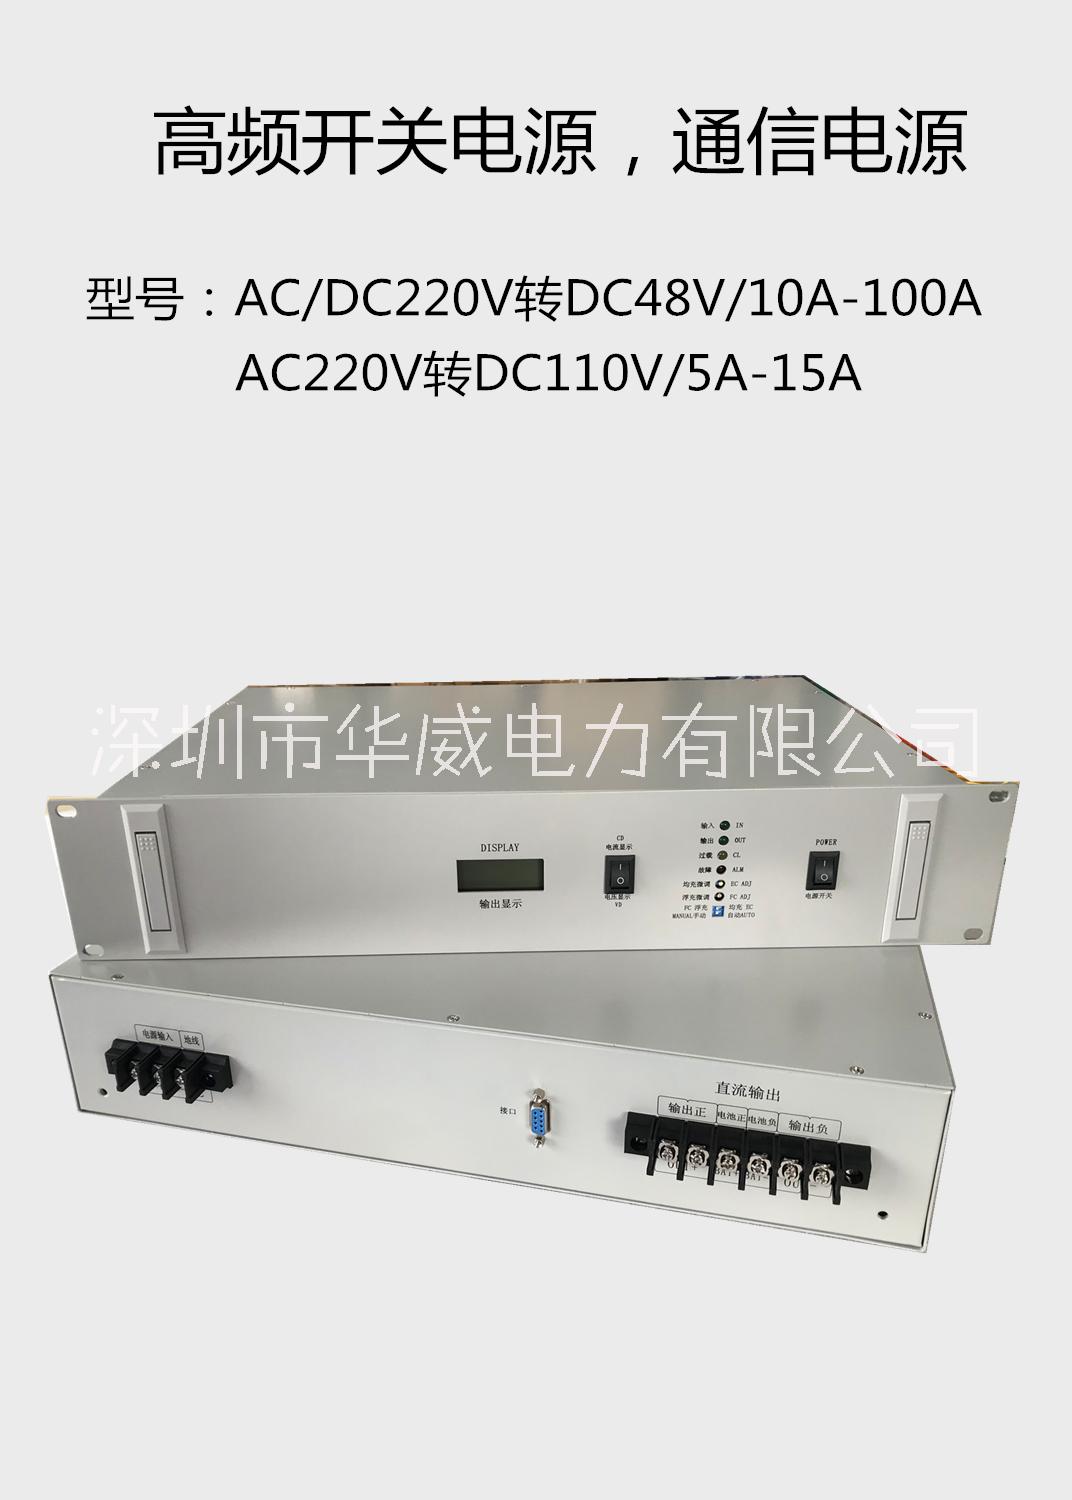 广州通信机房专用DC48V嵌入式通信电源